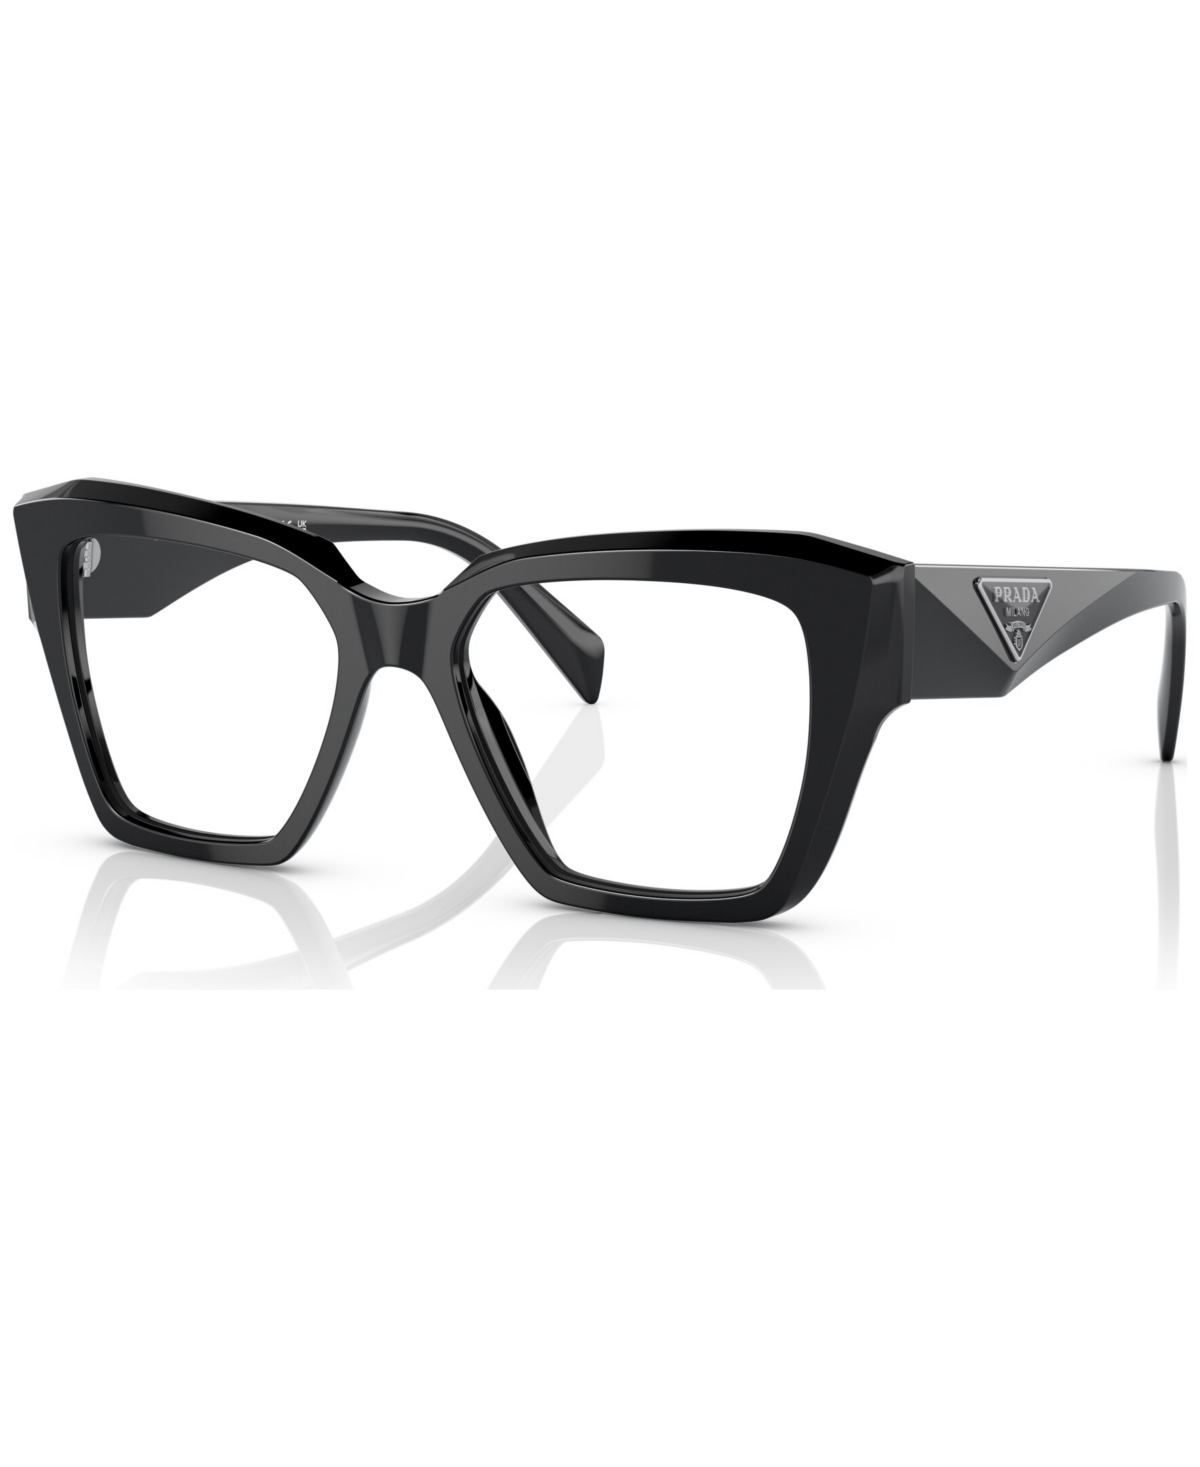 Women's Square Eyeglasses, Pr 09ZV - Honey Tortoise